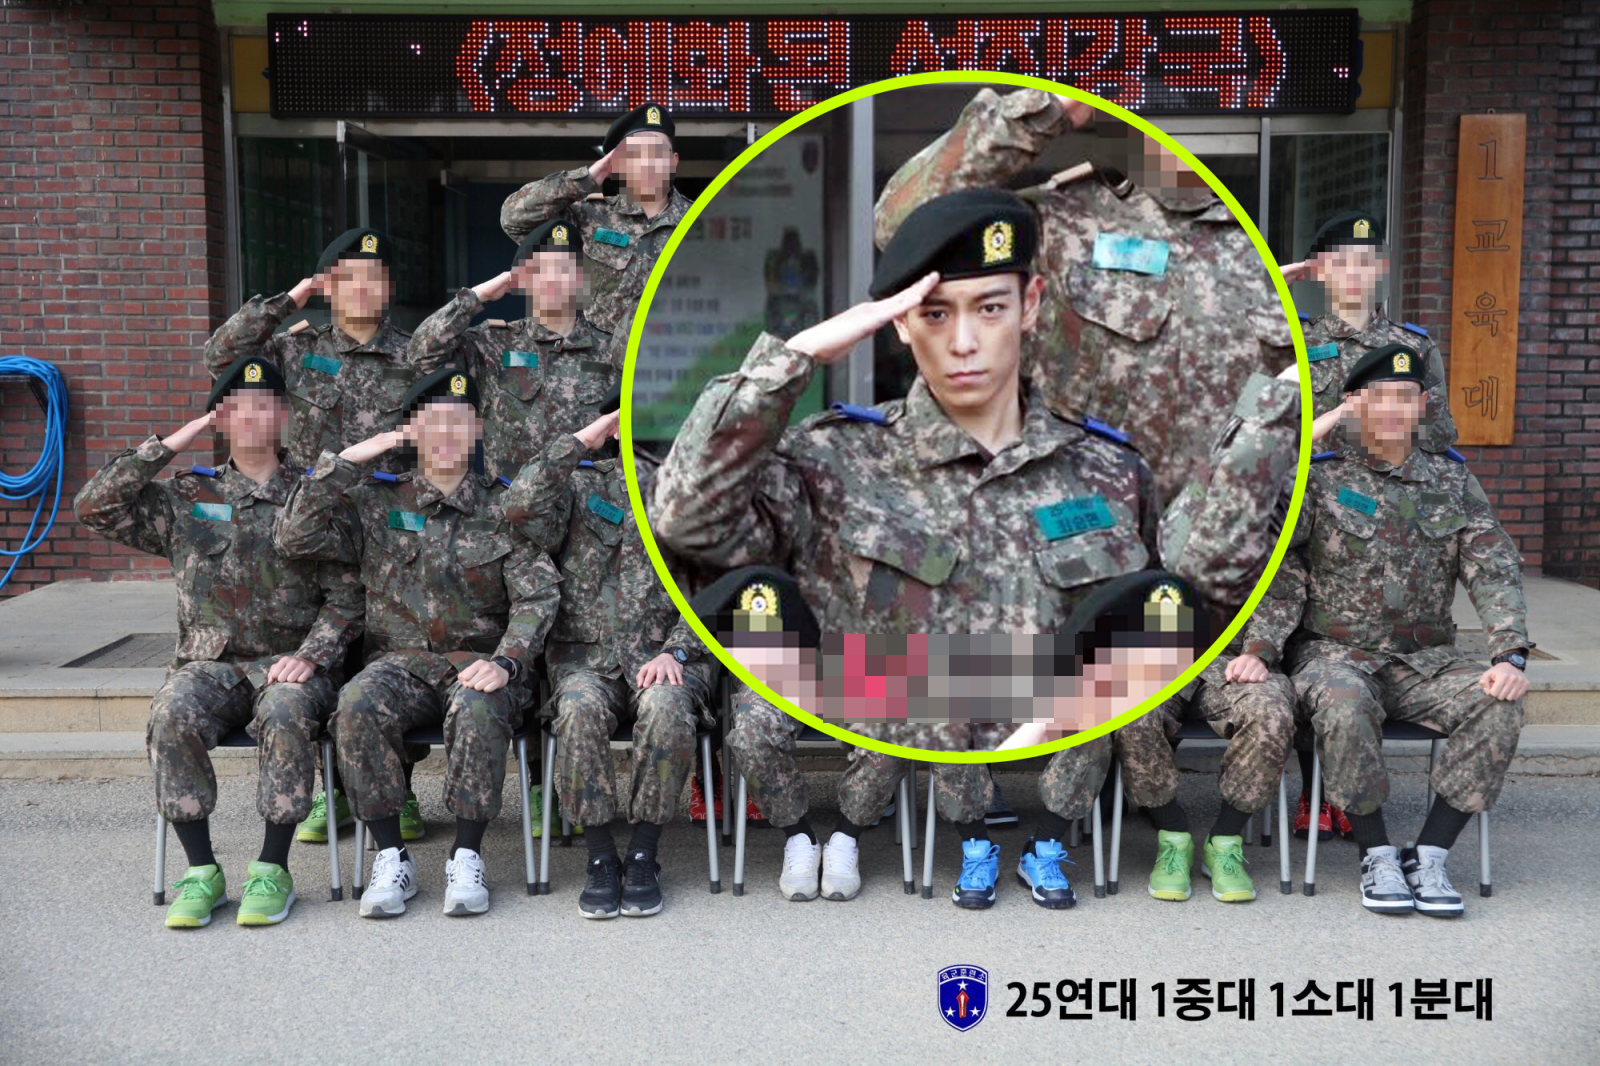 
Hình ảnh T.O.P cùng đồng đội ở trại huấn luyện trước khi được chuyển sang đơn vị phục vụ quân sự.